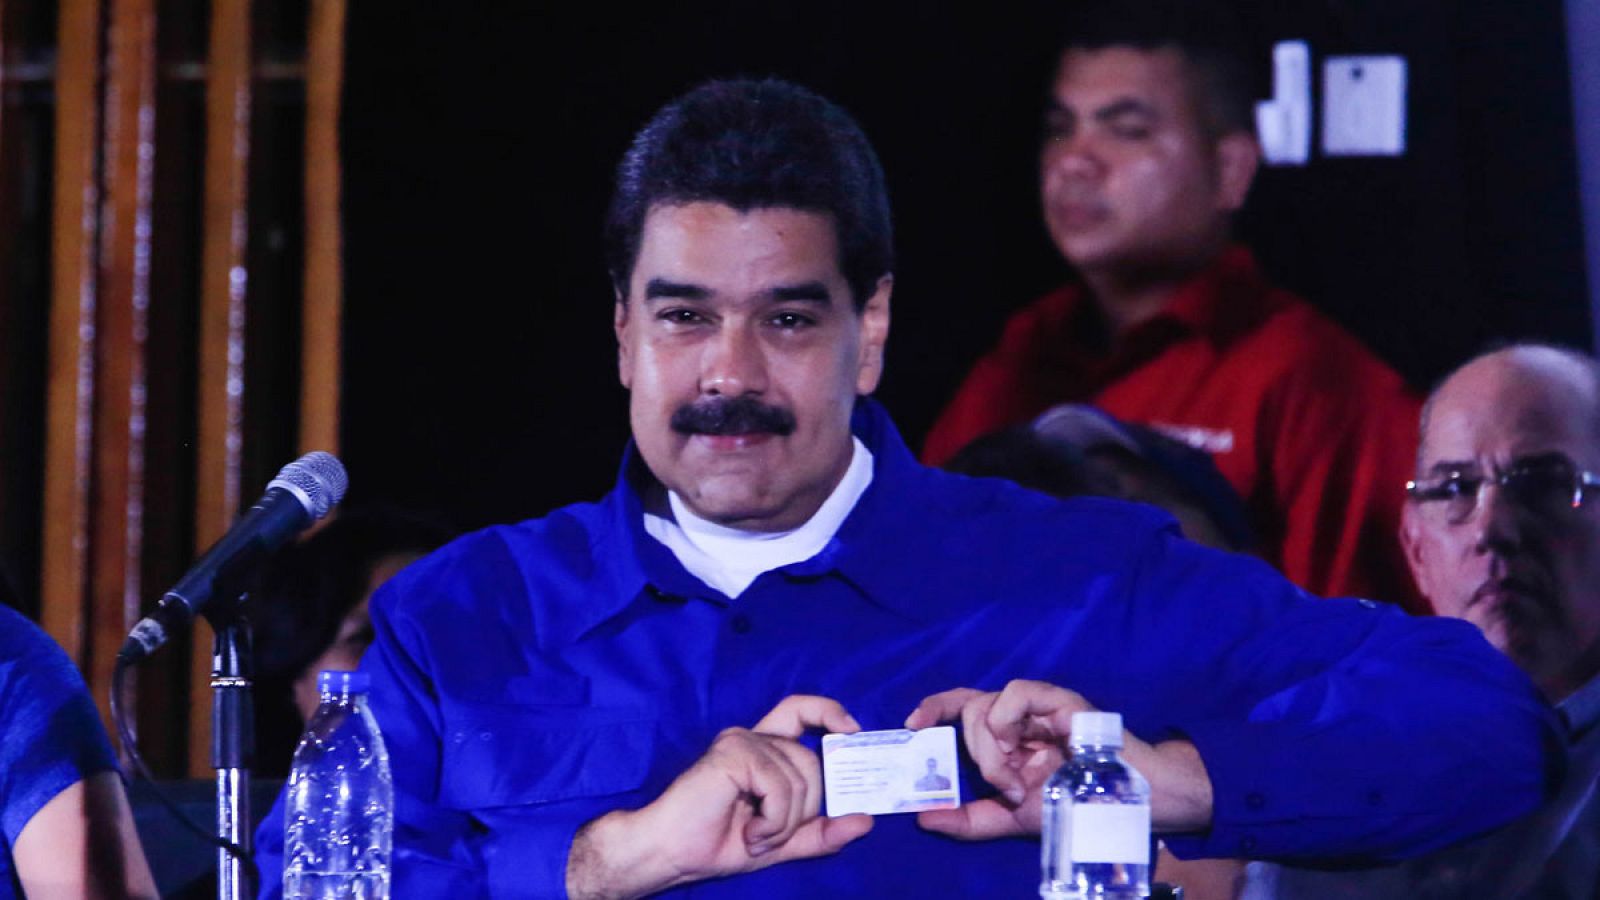 Fotografía cedida por la oficina de prensa del Palacio de Miraflores que muestra al presidente de Venezuela, Nicolás Maduro, durante un acto de gobierno el sábado 29 de julio de 2017, en Caracas (Venezuela).